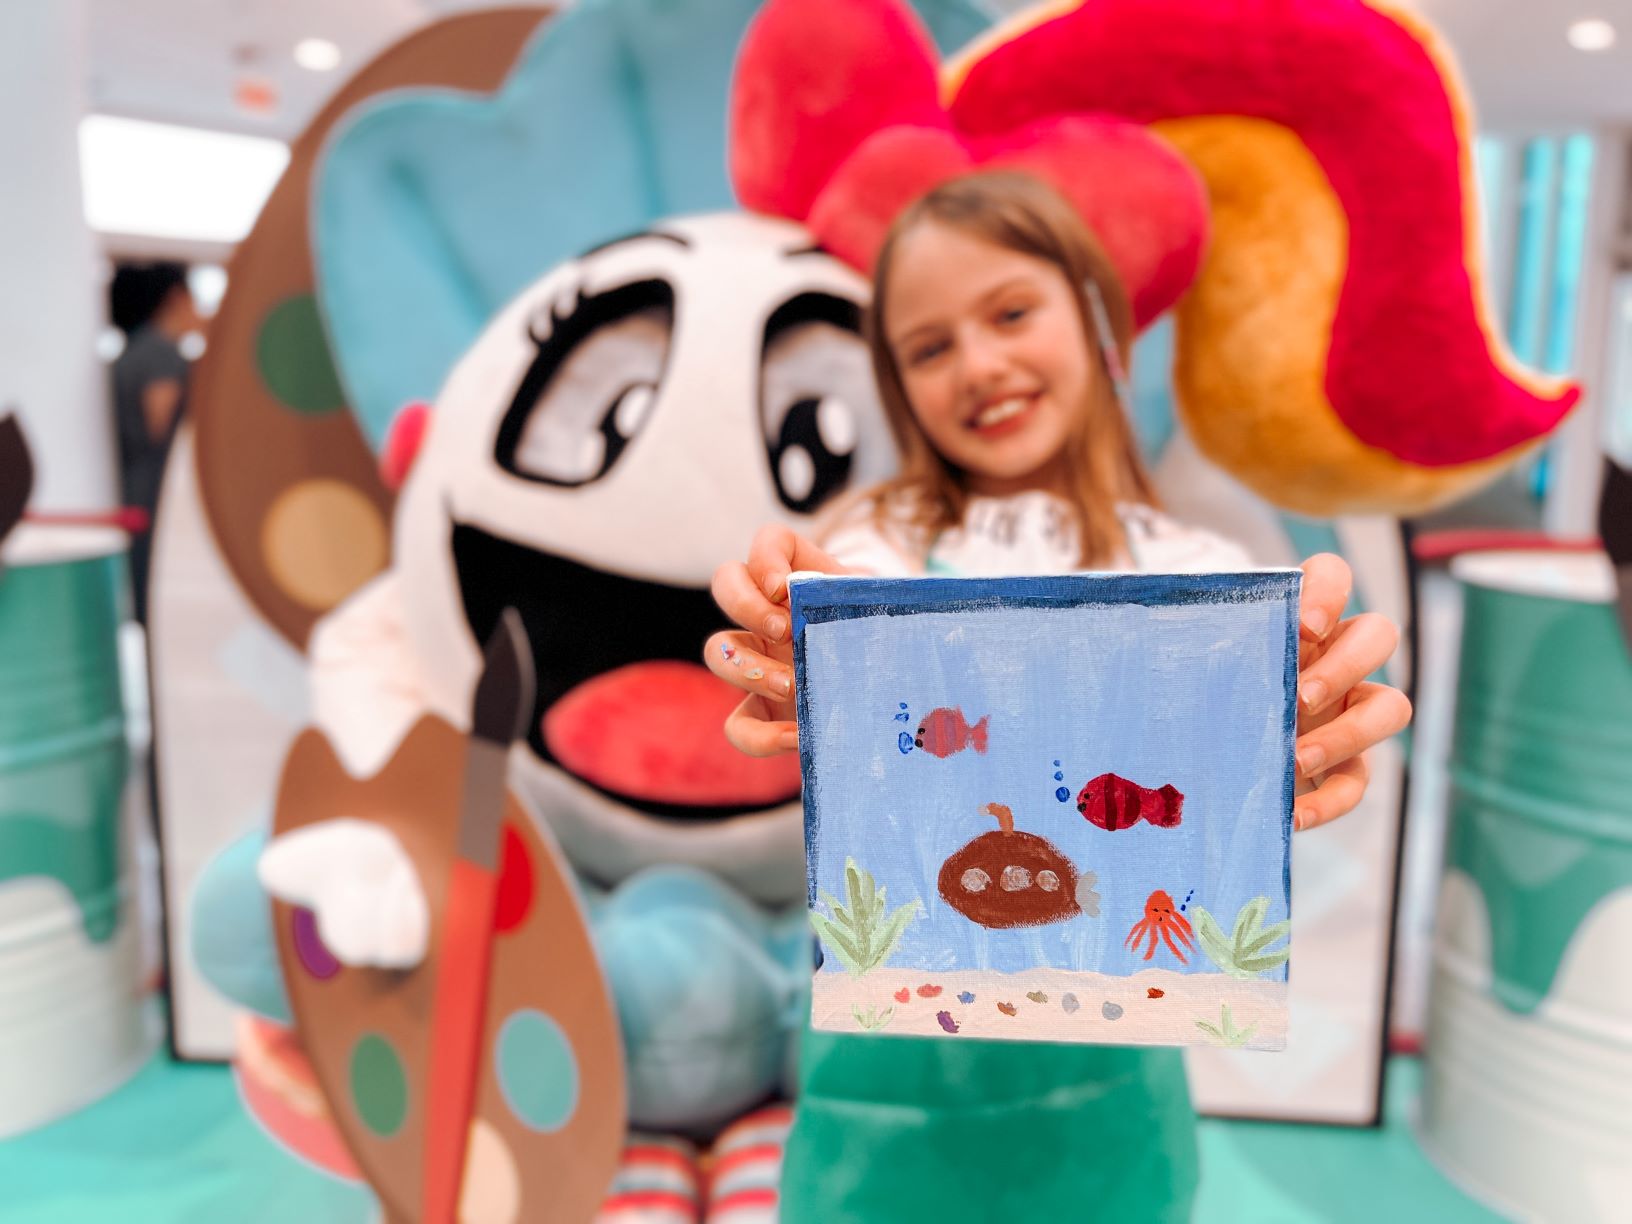 Itajaí Shopping: Crianças brincam de ser artistas e criam suas próprias obras no ‘Ateliê da Pérola’